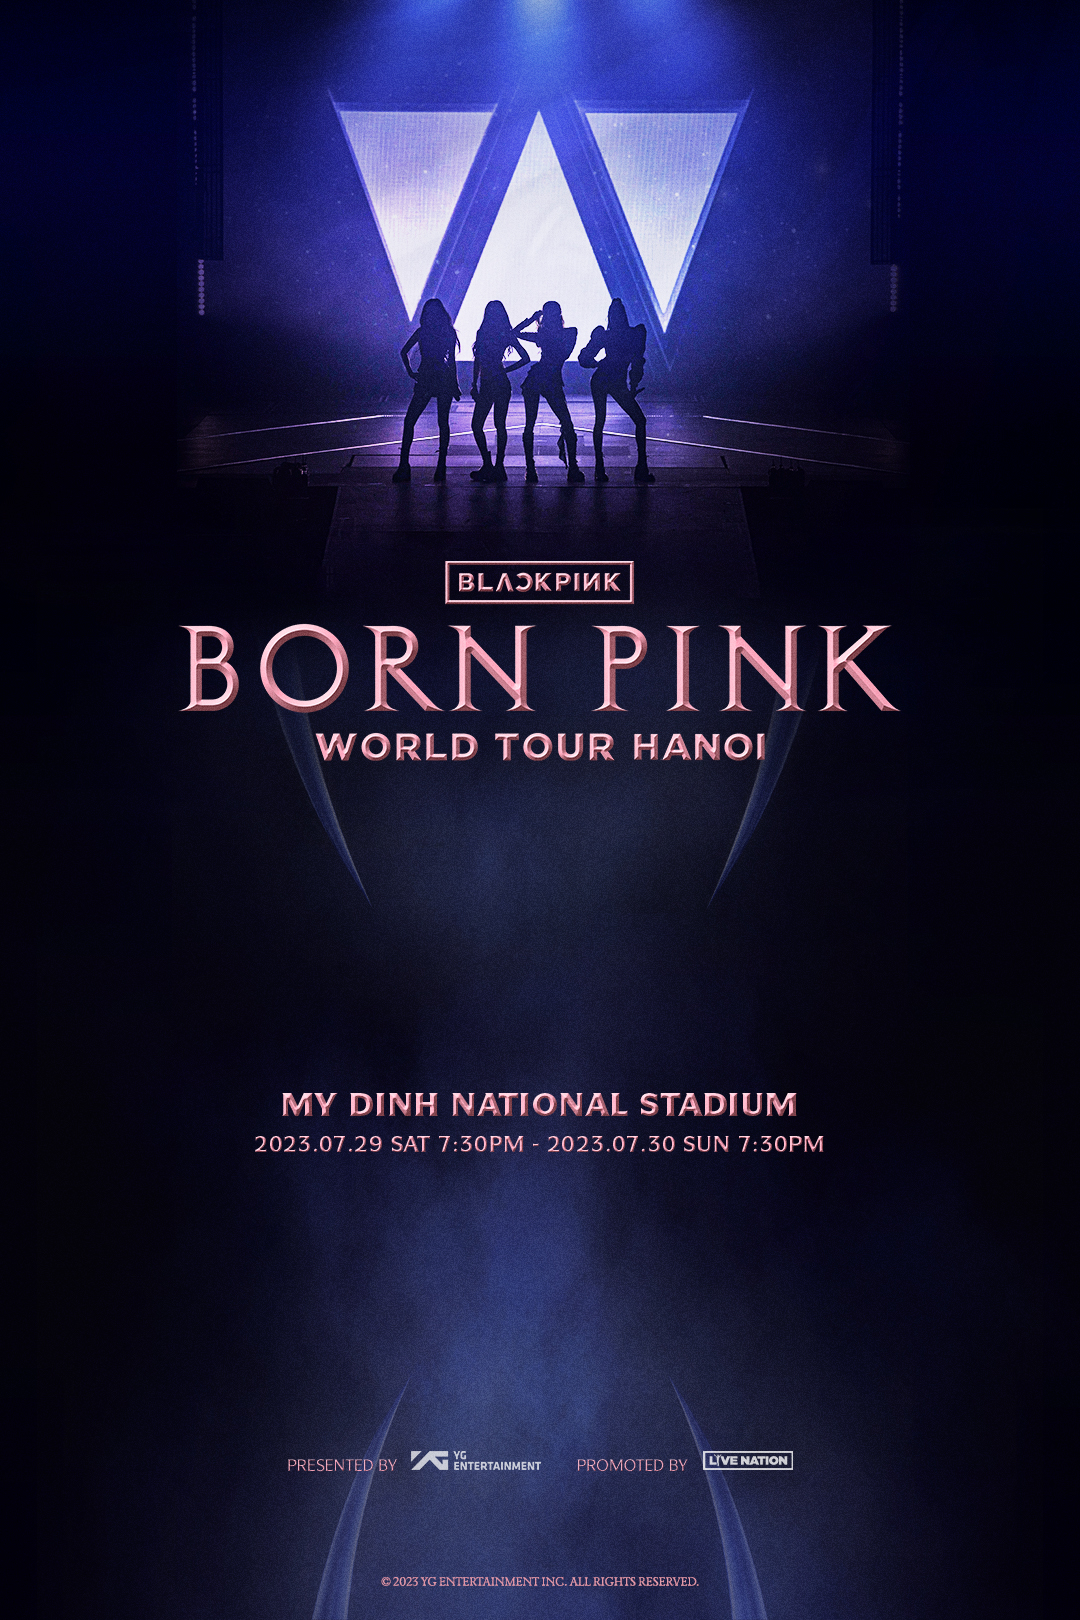 Chưa chính thức xin phép biểu diễn nhưng BLACKPINK đã khiến cộng đồng mạng &quot;phát sốt&quot;: World Tour “BORN PINK” tại Hà Nội có thể thu về bao nhiêu tiền? - Ảnh 2.